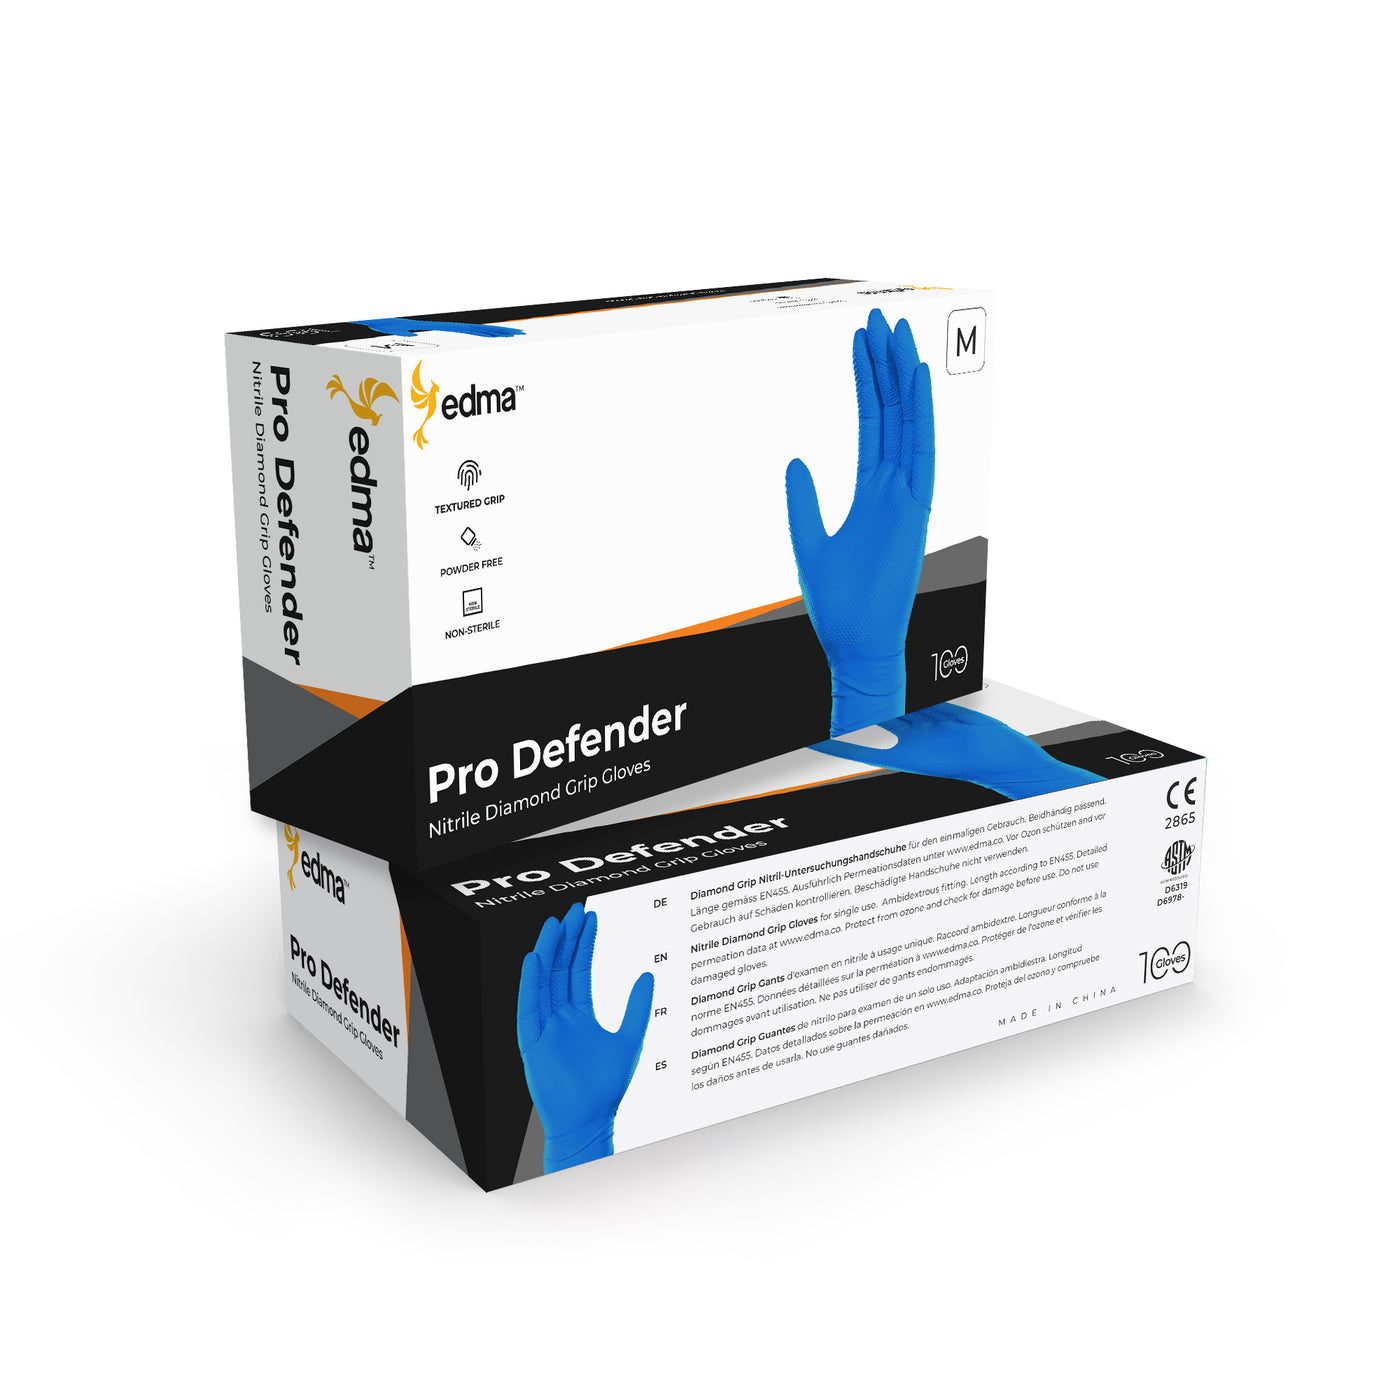 2 Boxes of Edma Pro Defender Blue Nitrile Diamond Grip 9mil Gloves #color_blue